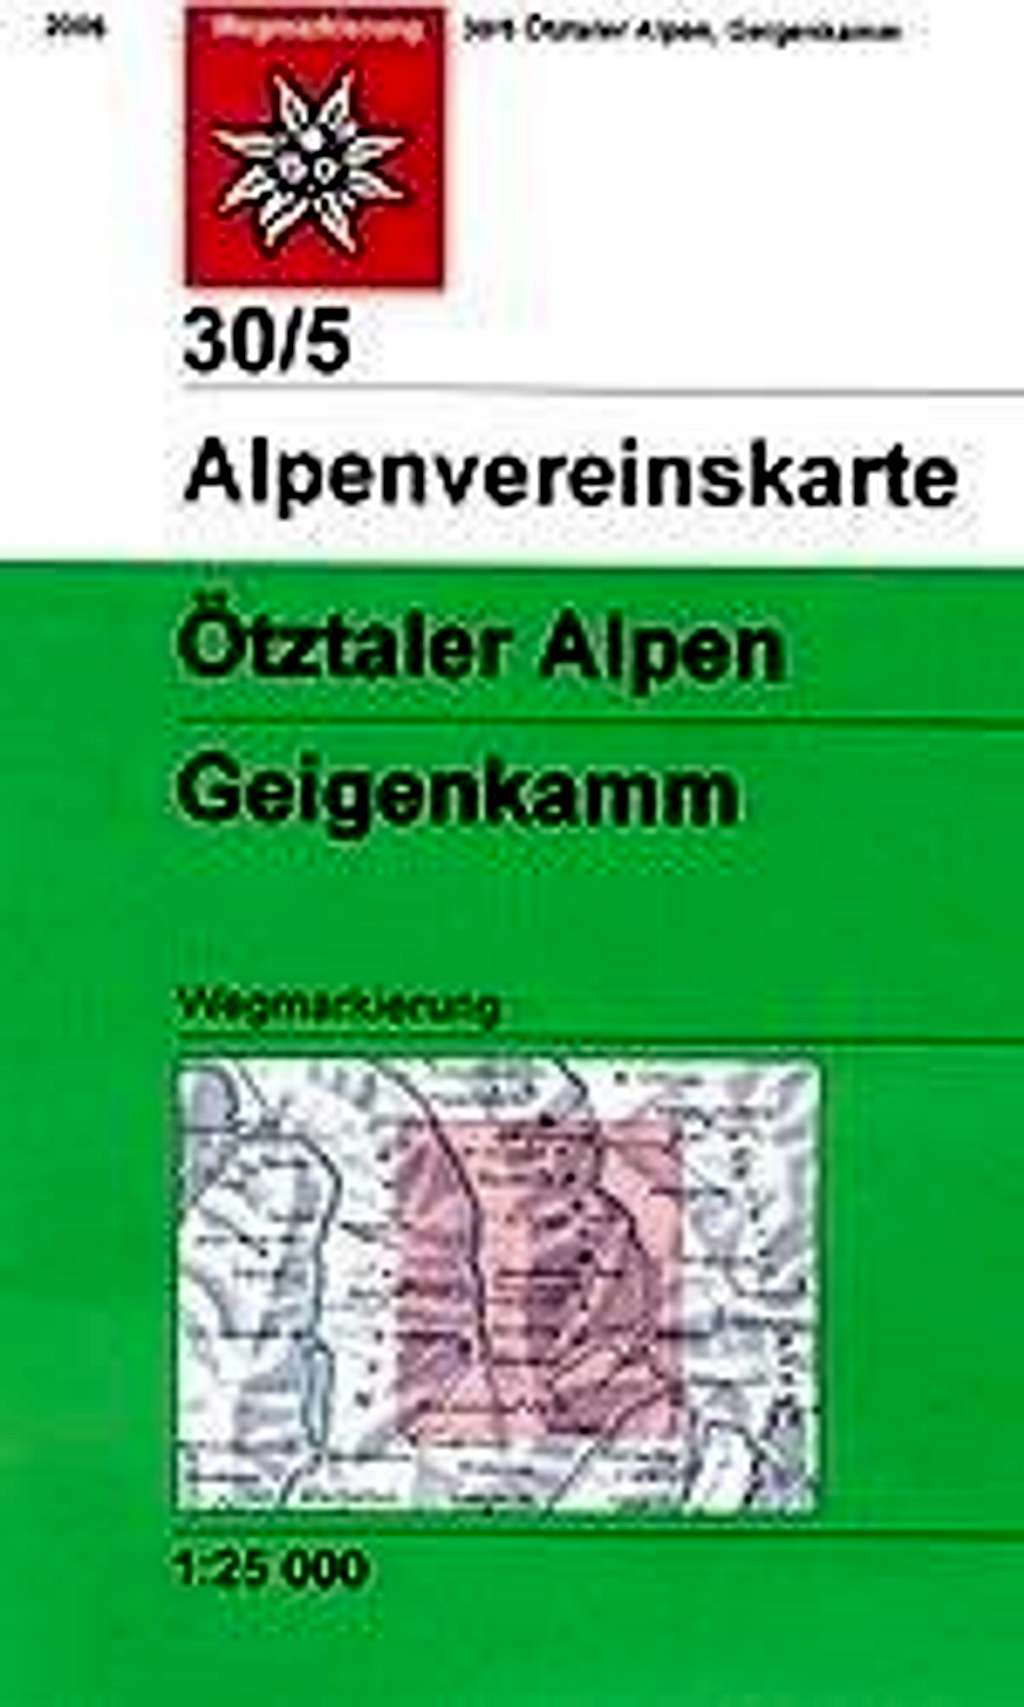 Alpenvereinskarte 30/5 Geigenkamm/Otztal Alps